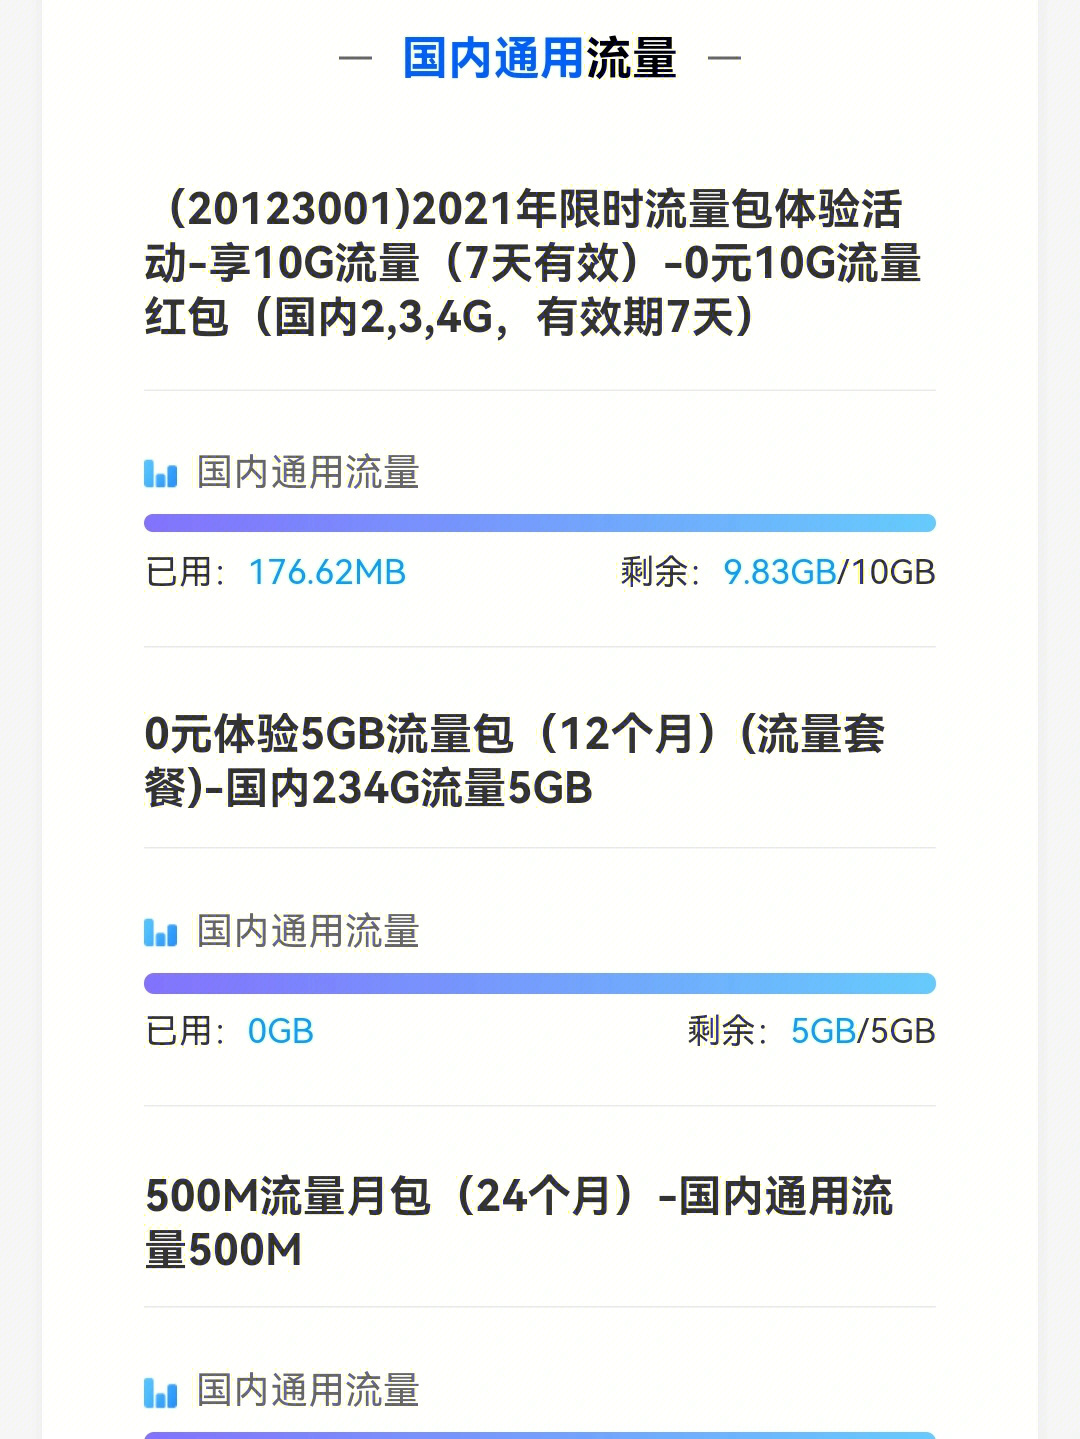 14申请开通移动5g流量包(国内5g单模流量)早上8:04 中国移动10086短信